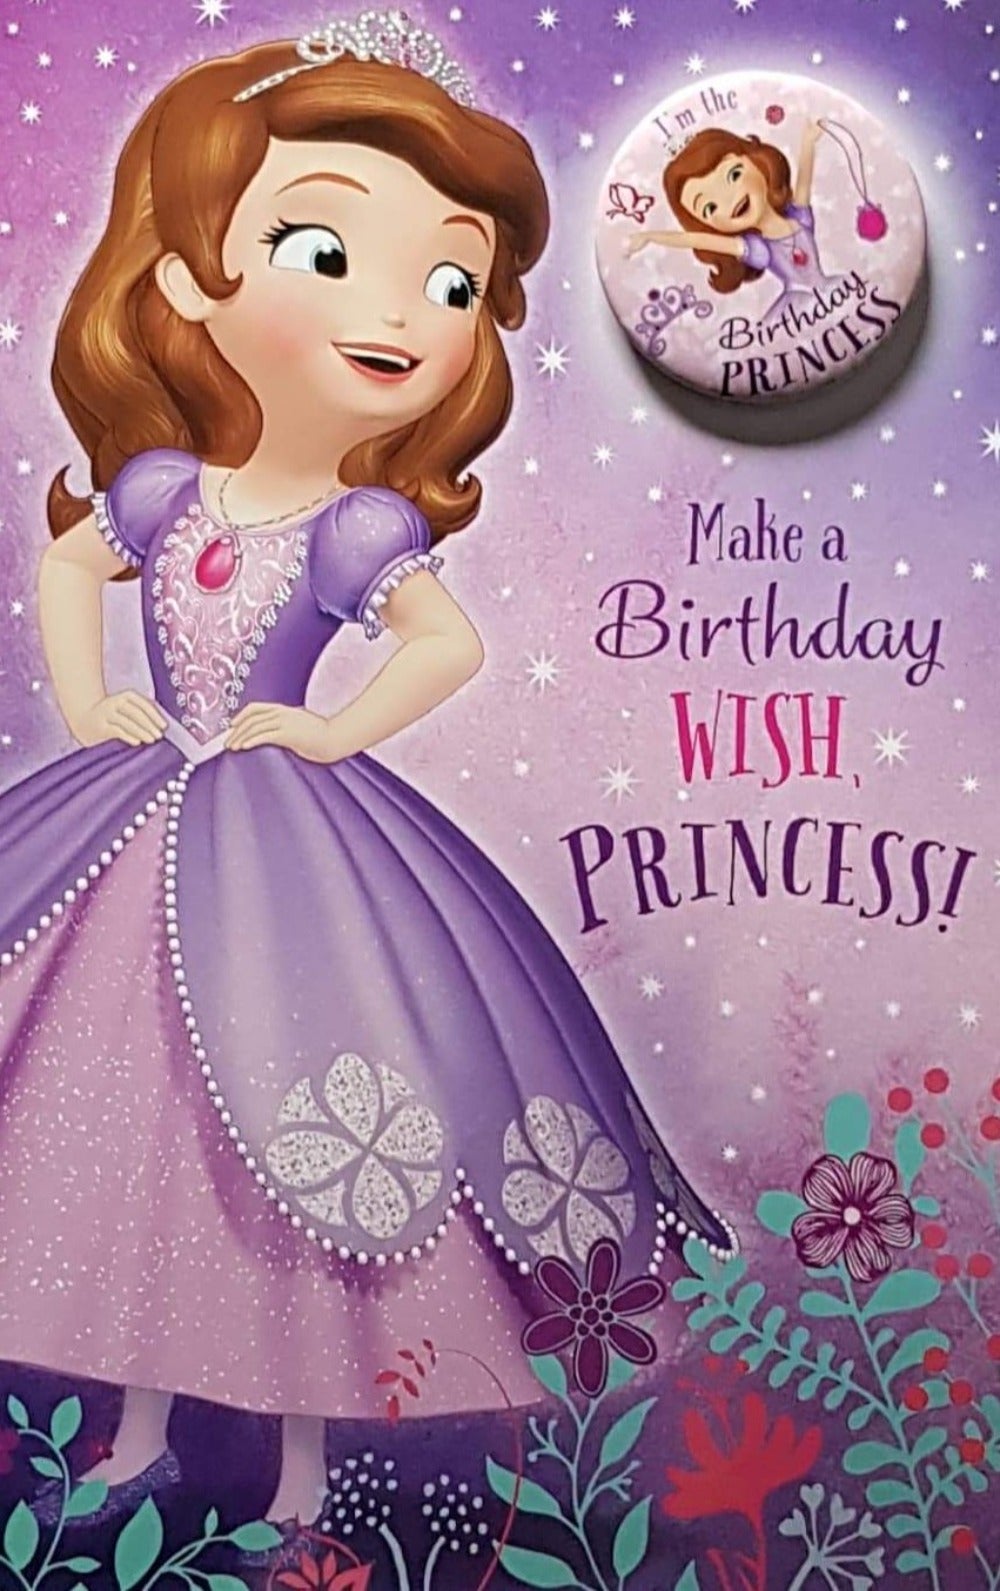 Birthday Card - Girl / Girl In Purple Dress & Stars In The Sky